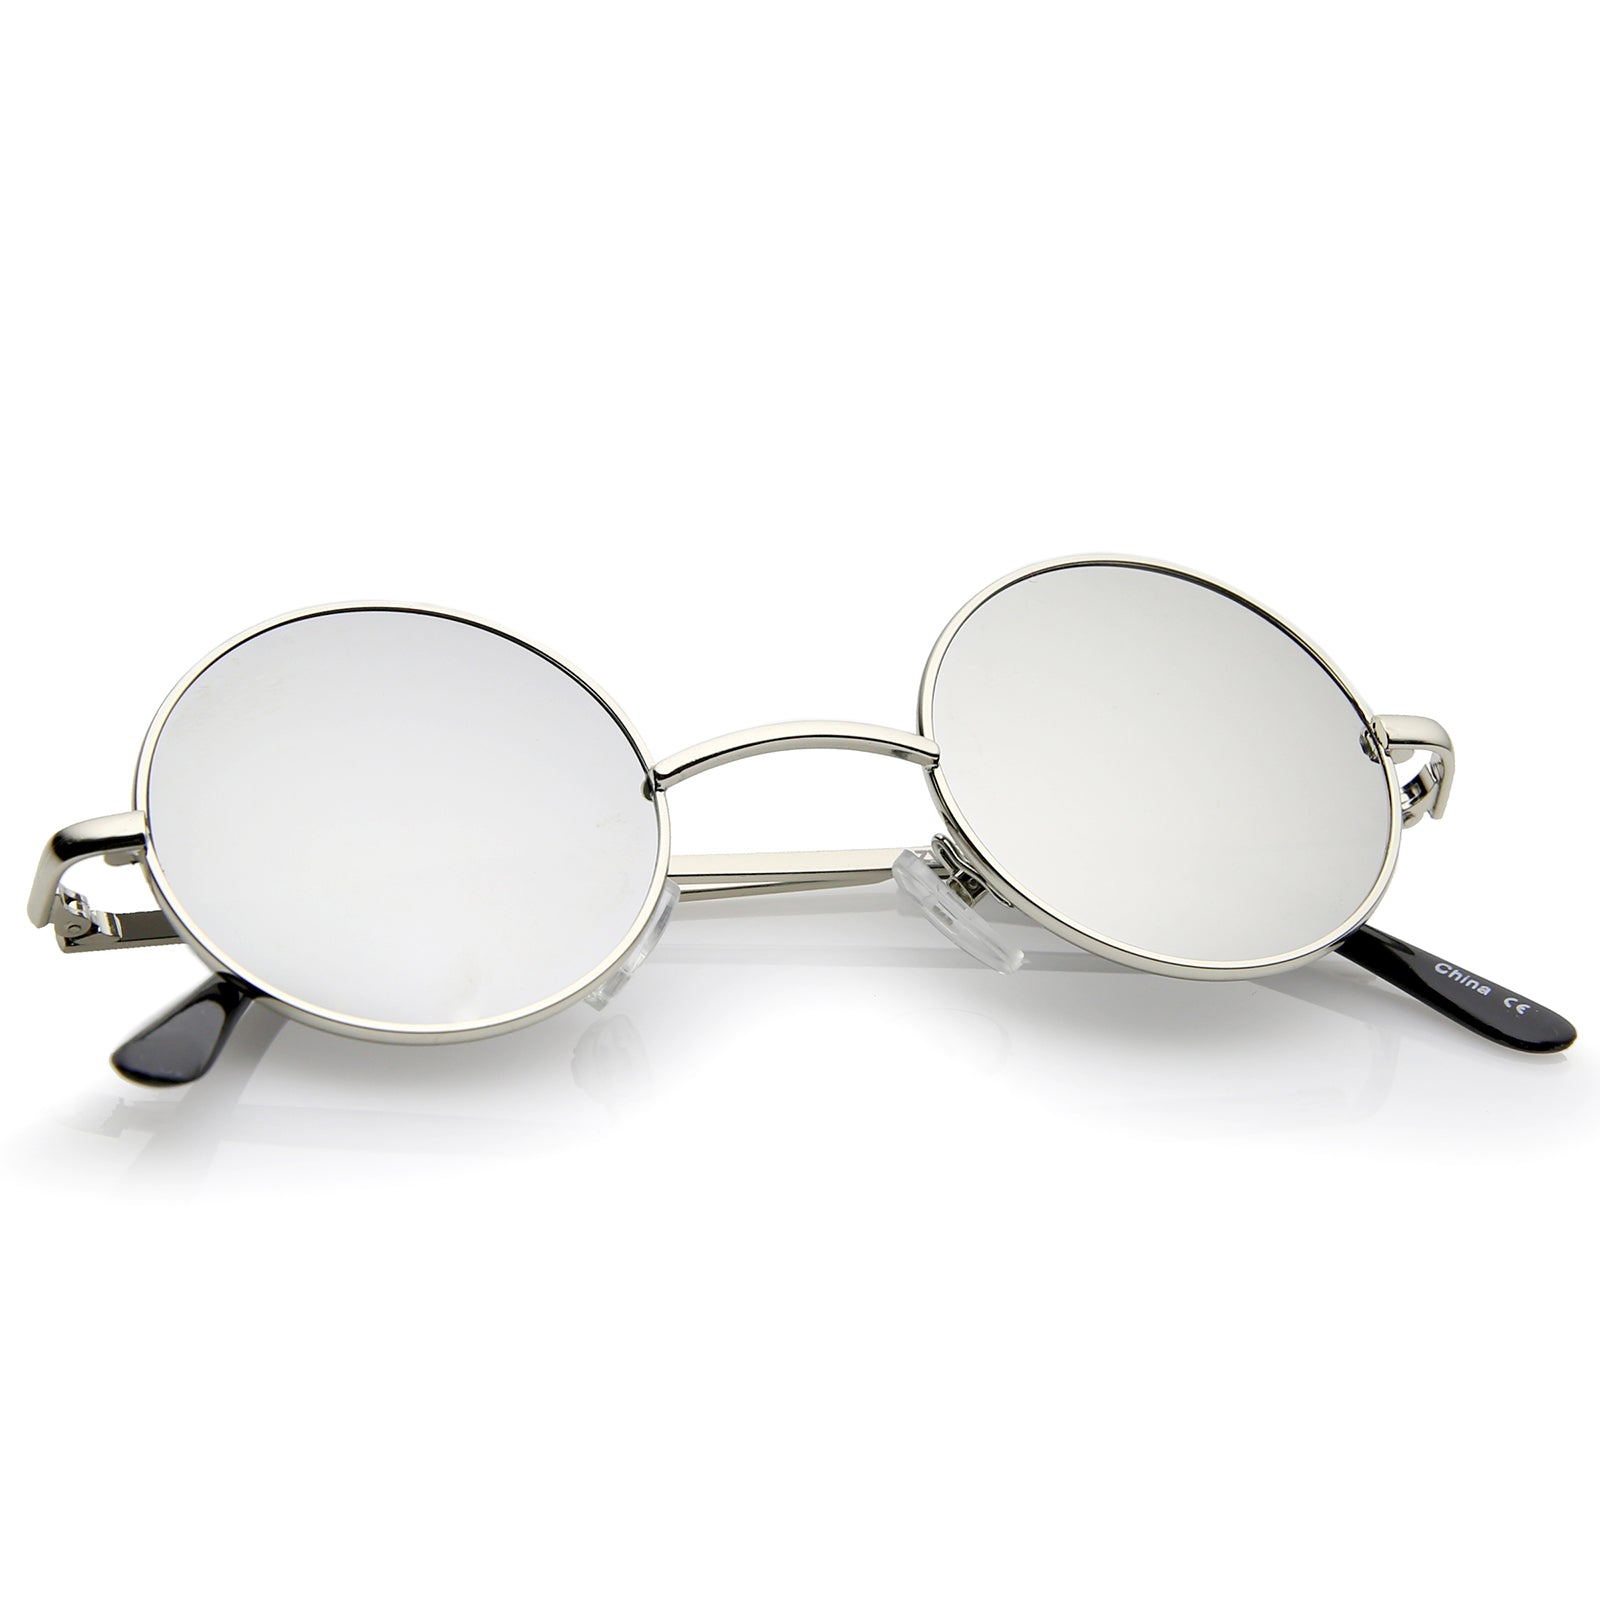 Retro Sunglasses Lennon Lens Mirror Style 41 Metal Small Colored Round